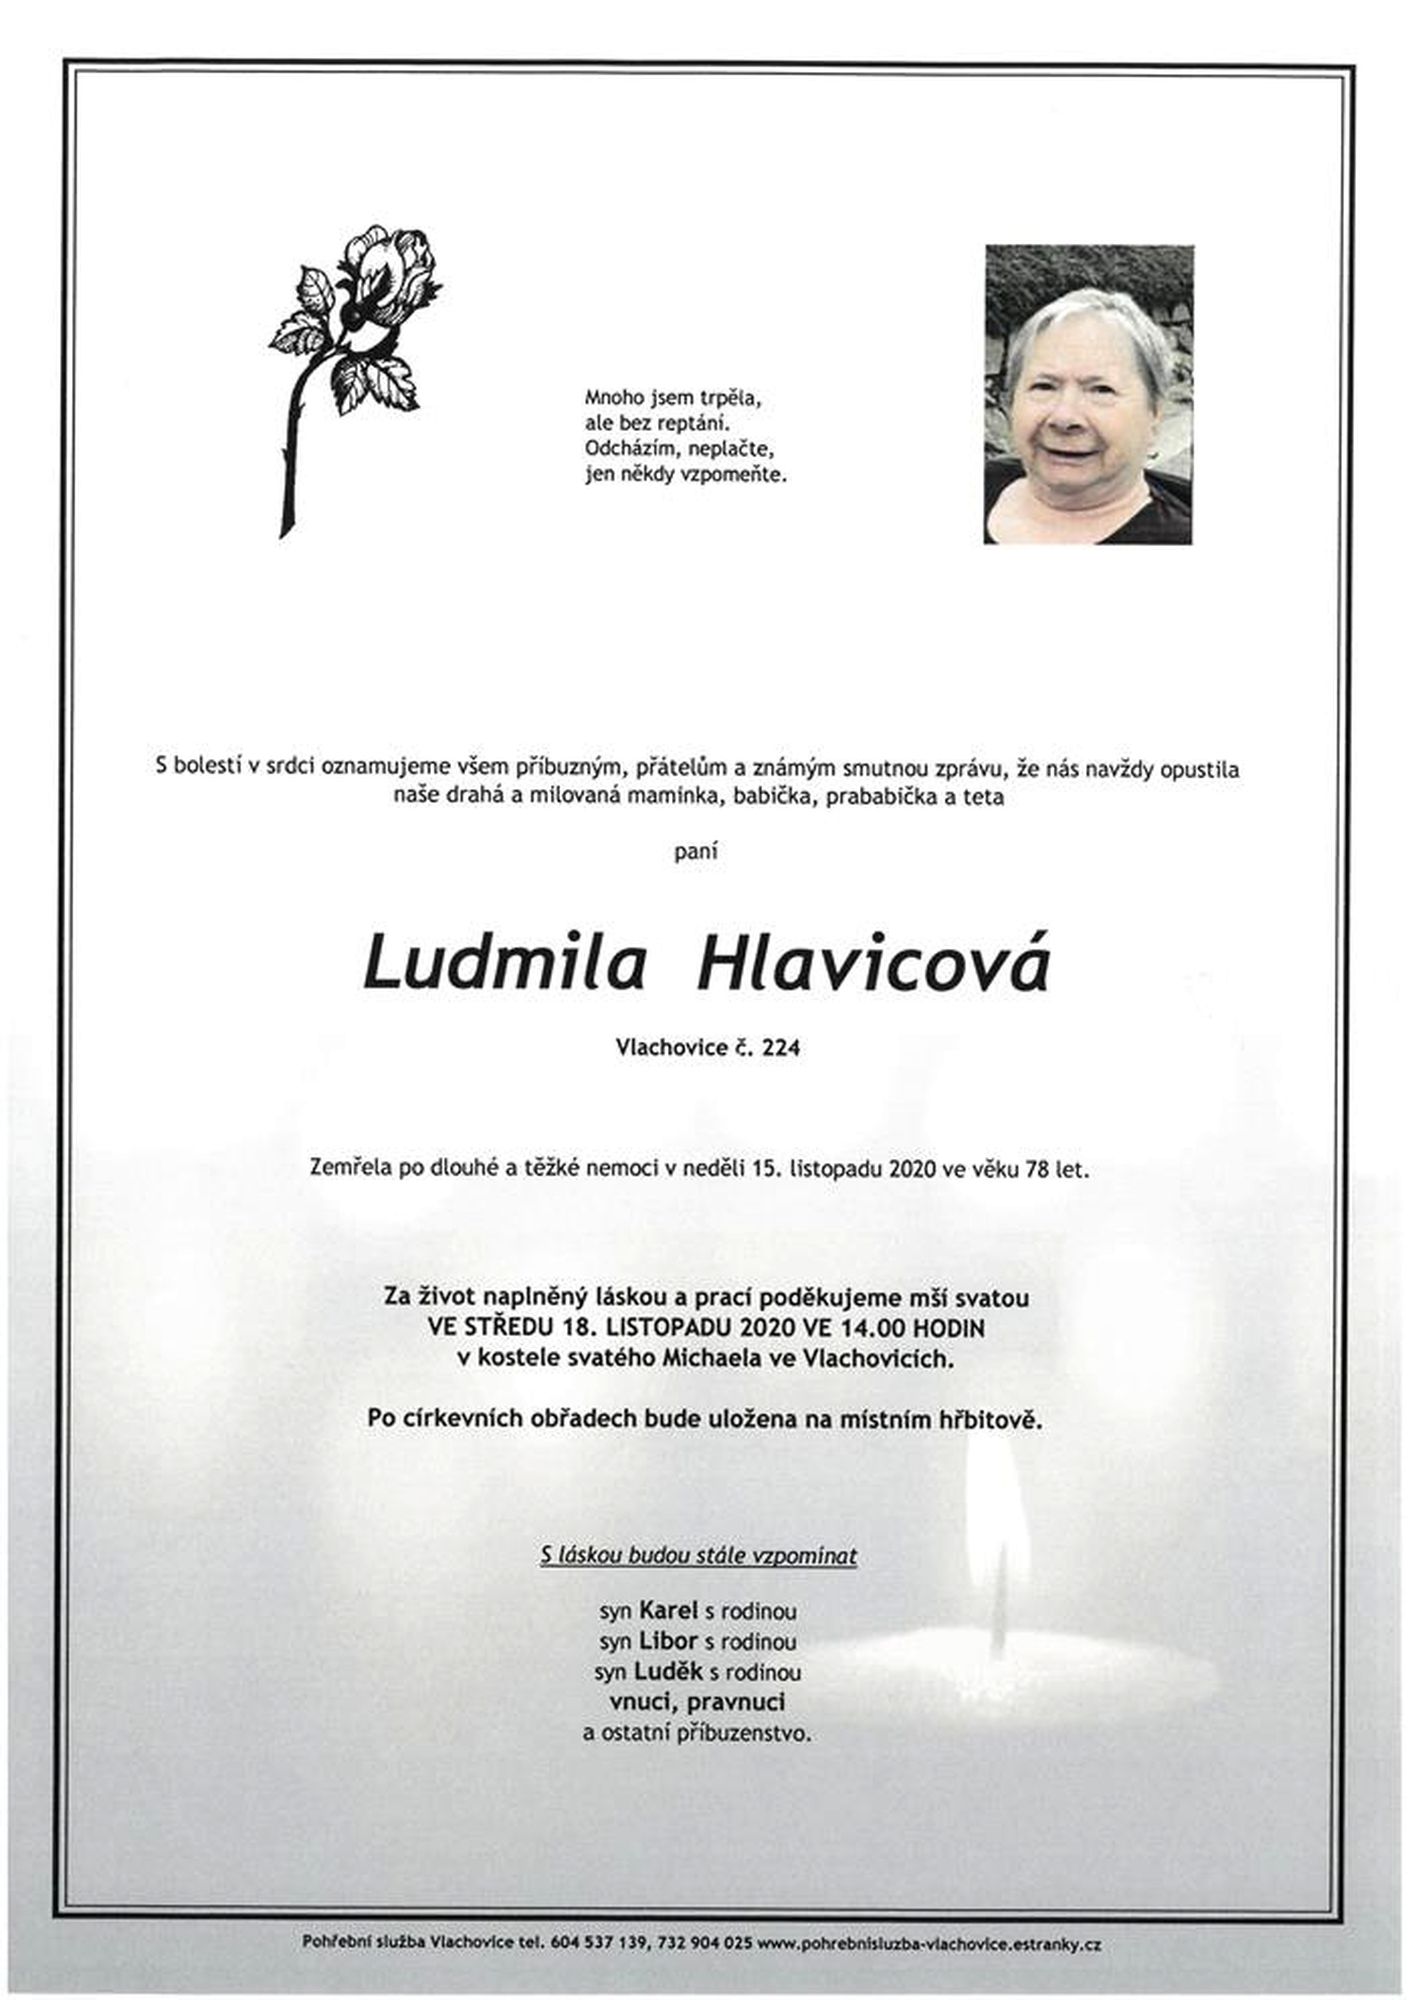 Ludmila Hlavicová